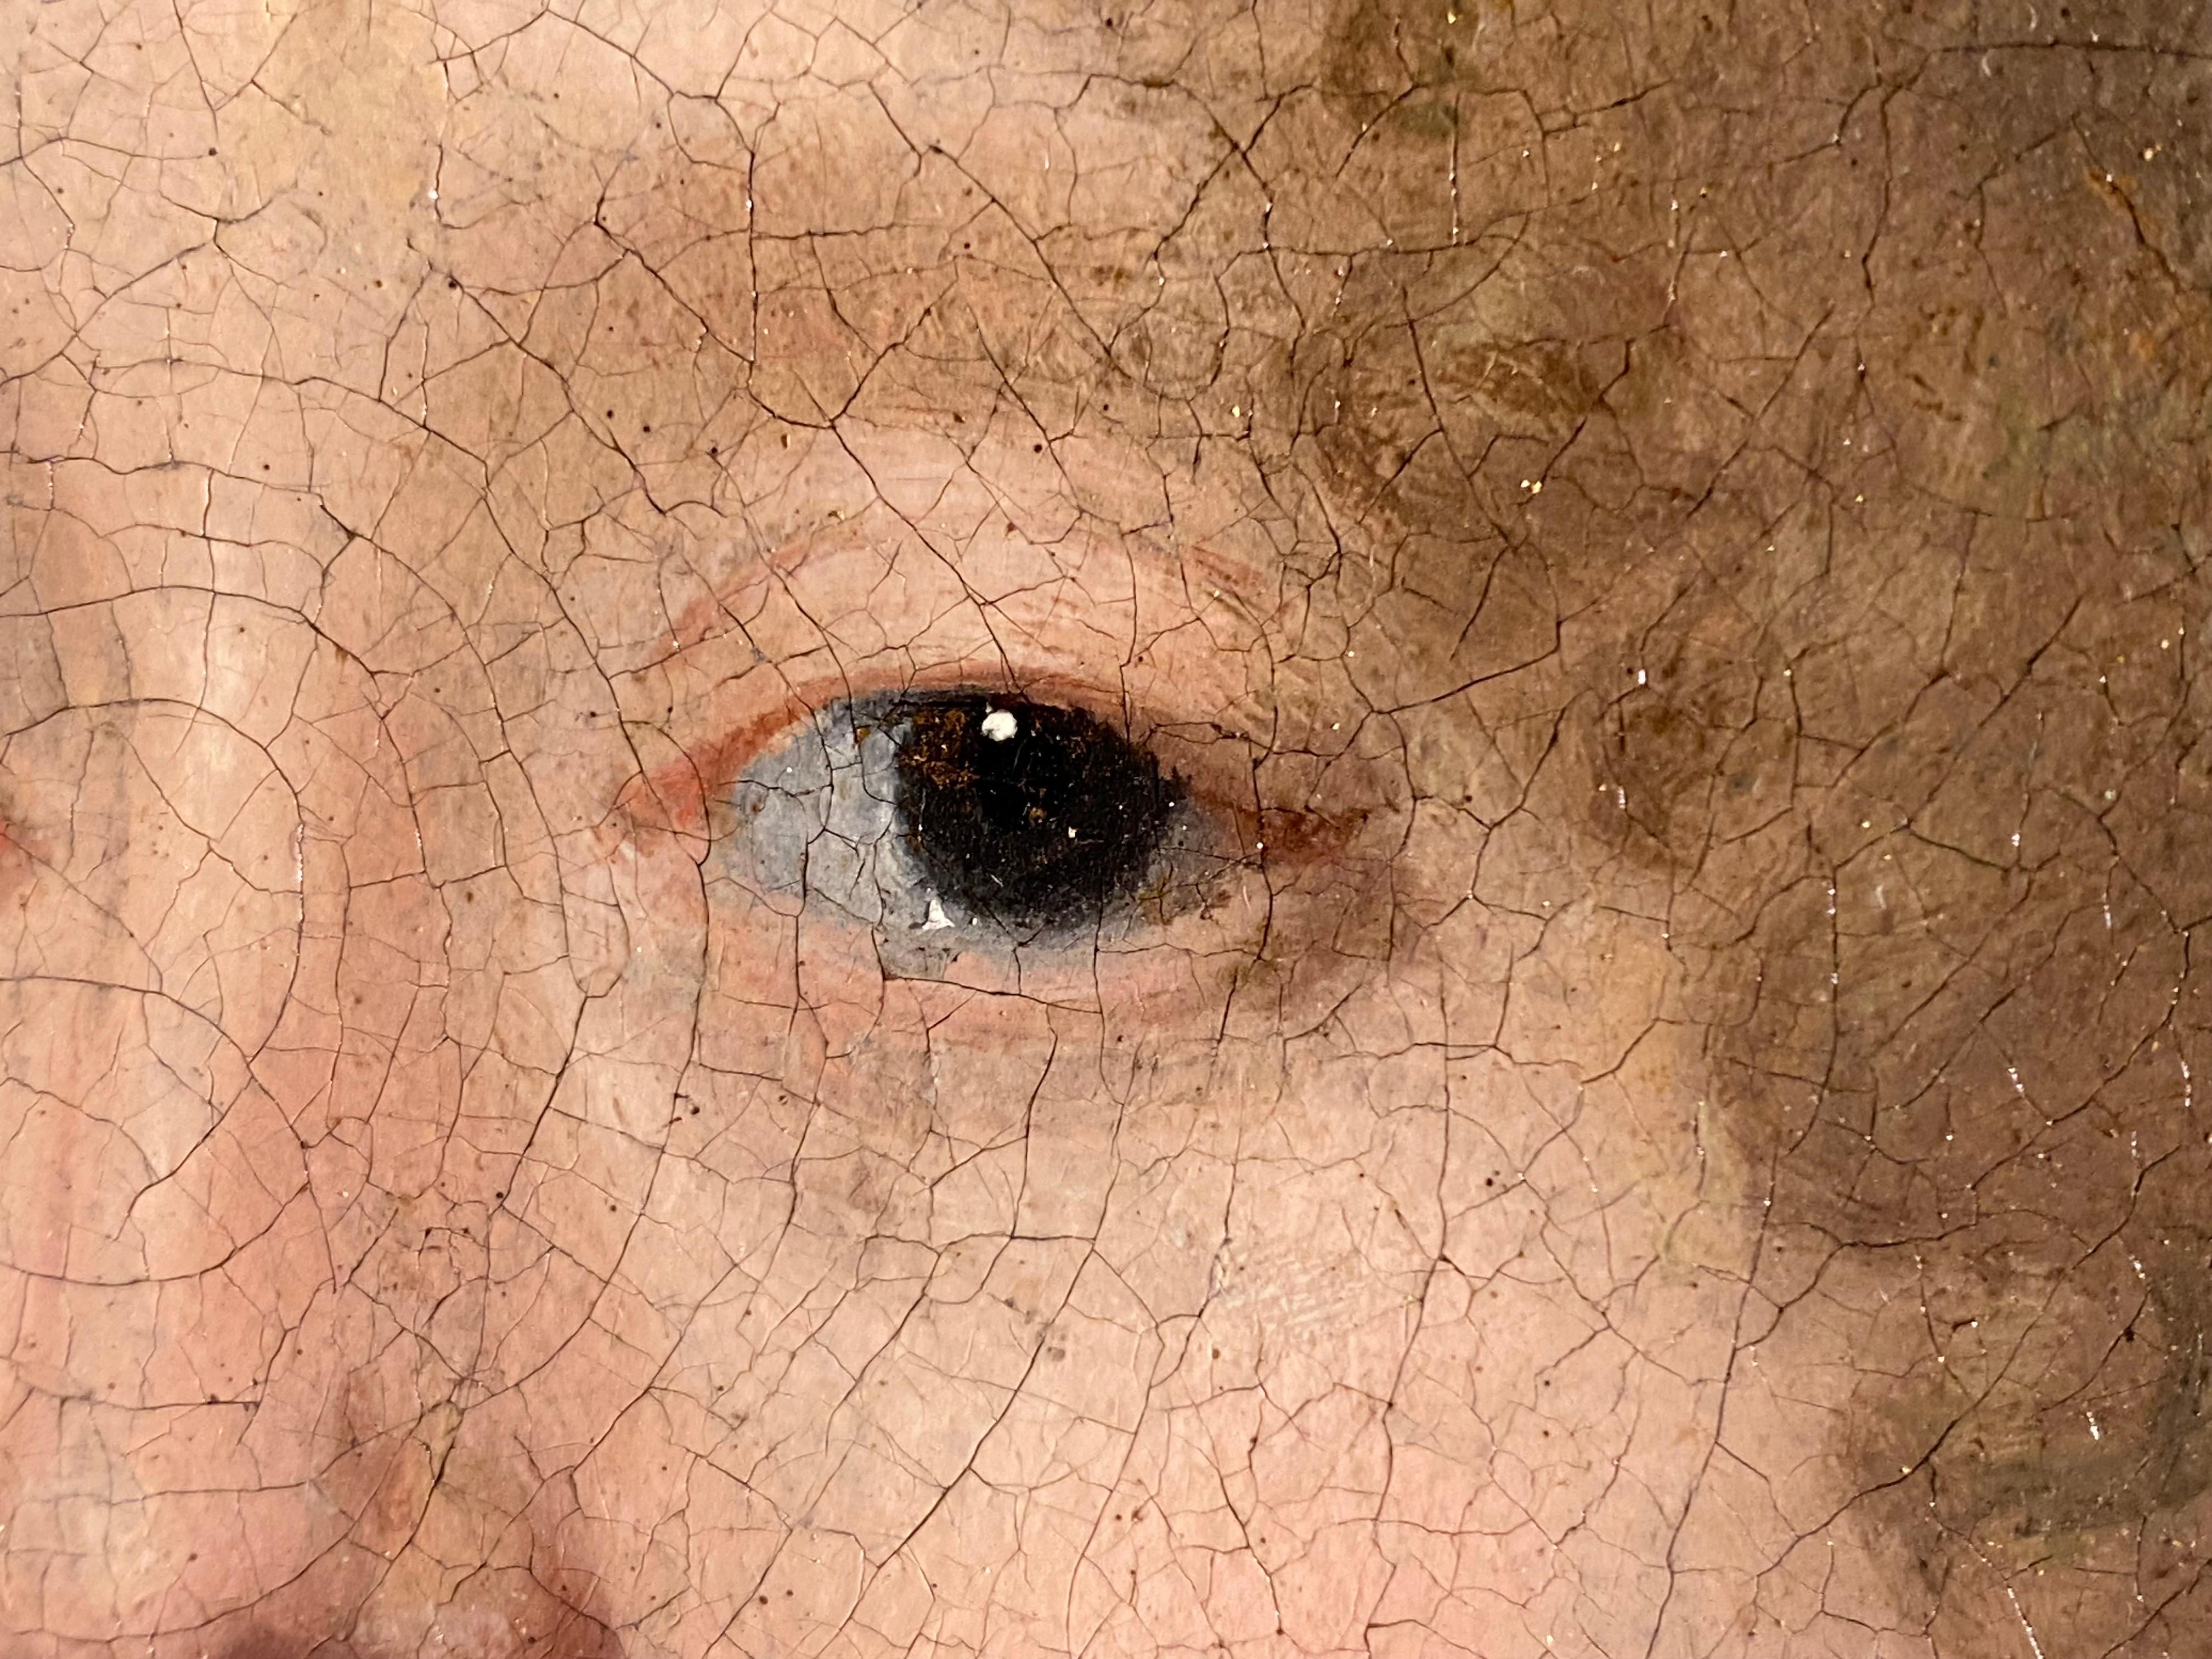 Très beau portrait de maître d'une jeune femme du 17ème siècle attribué à Nicolaes Maes.

Ce portrait délicat dépeint une beauté aux cheveux blonds bouclés et aux yeux bruns. Elle tient élégamment son écharpe de soie chatoyante et sourit doucement